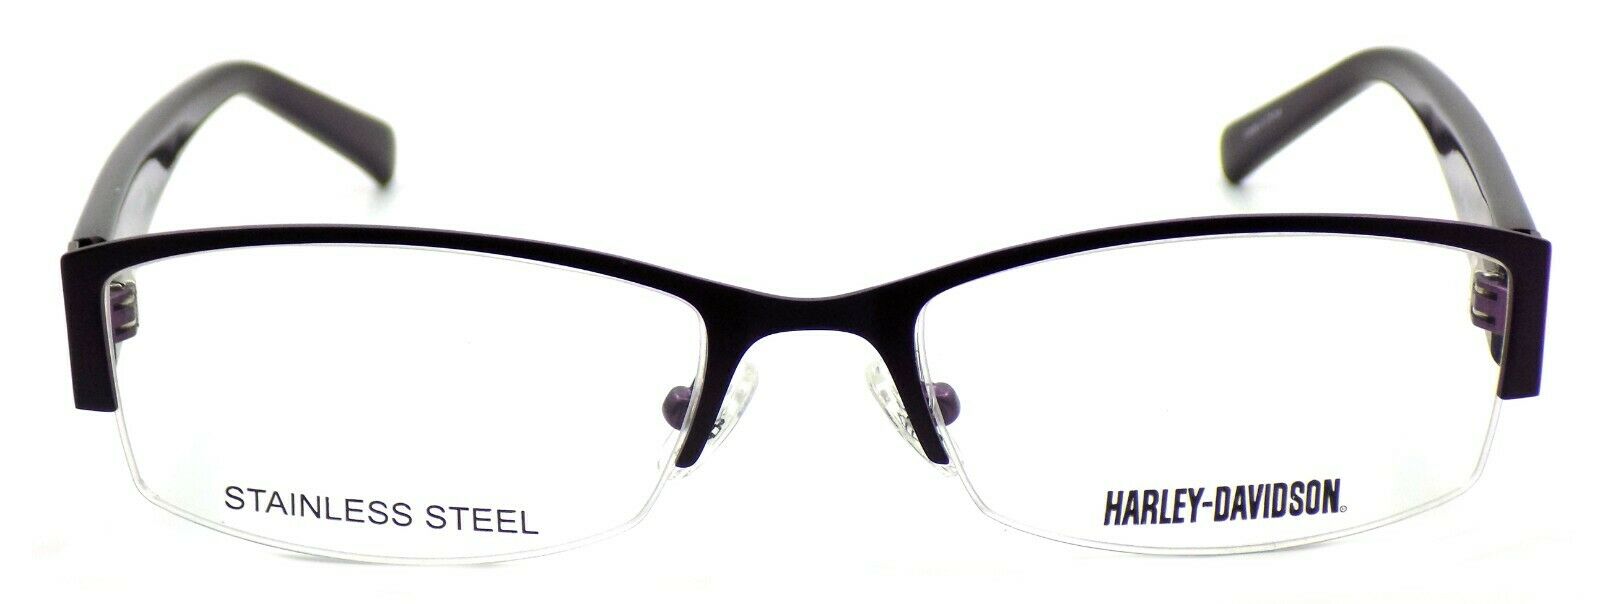 2-Harley Davidson HD0518 081 Women's Eyeglasses Frames Half-rim 54-18-135 Violet-715583499867-IKSpecs